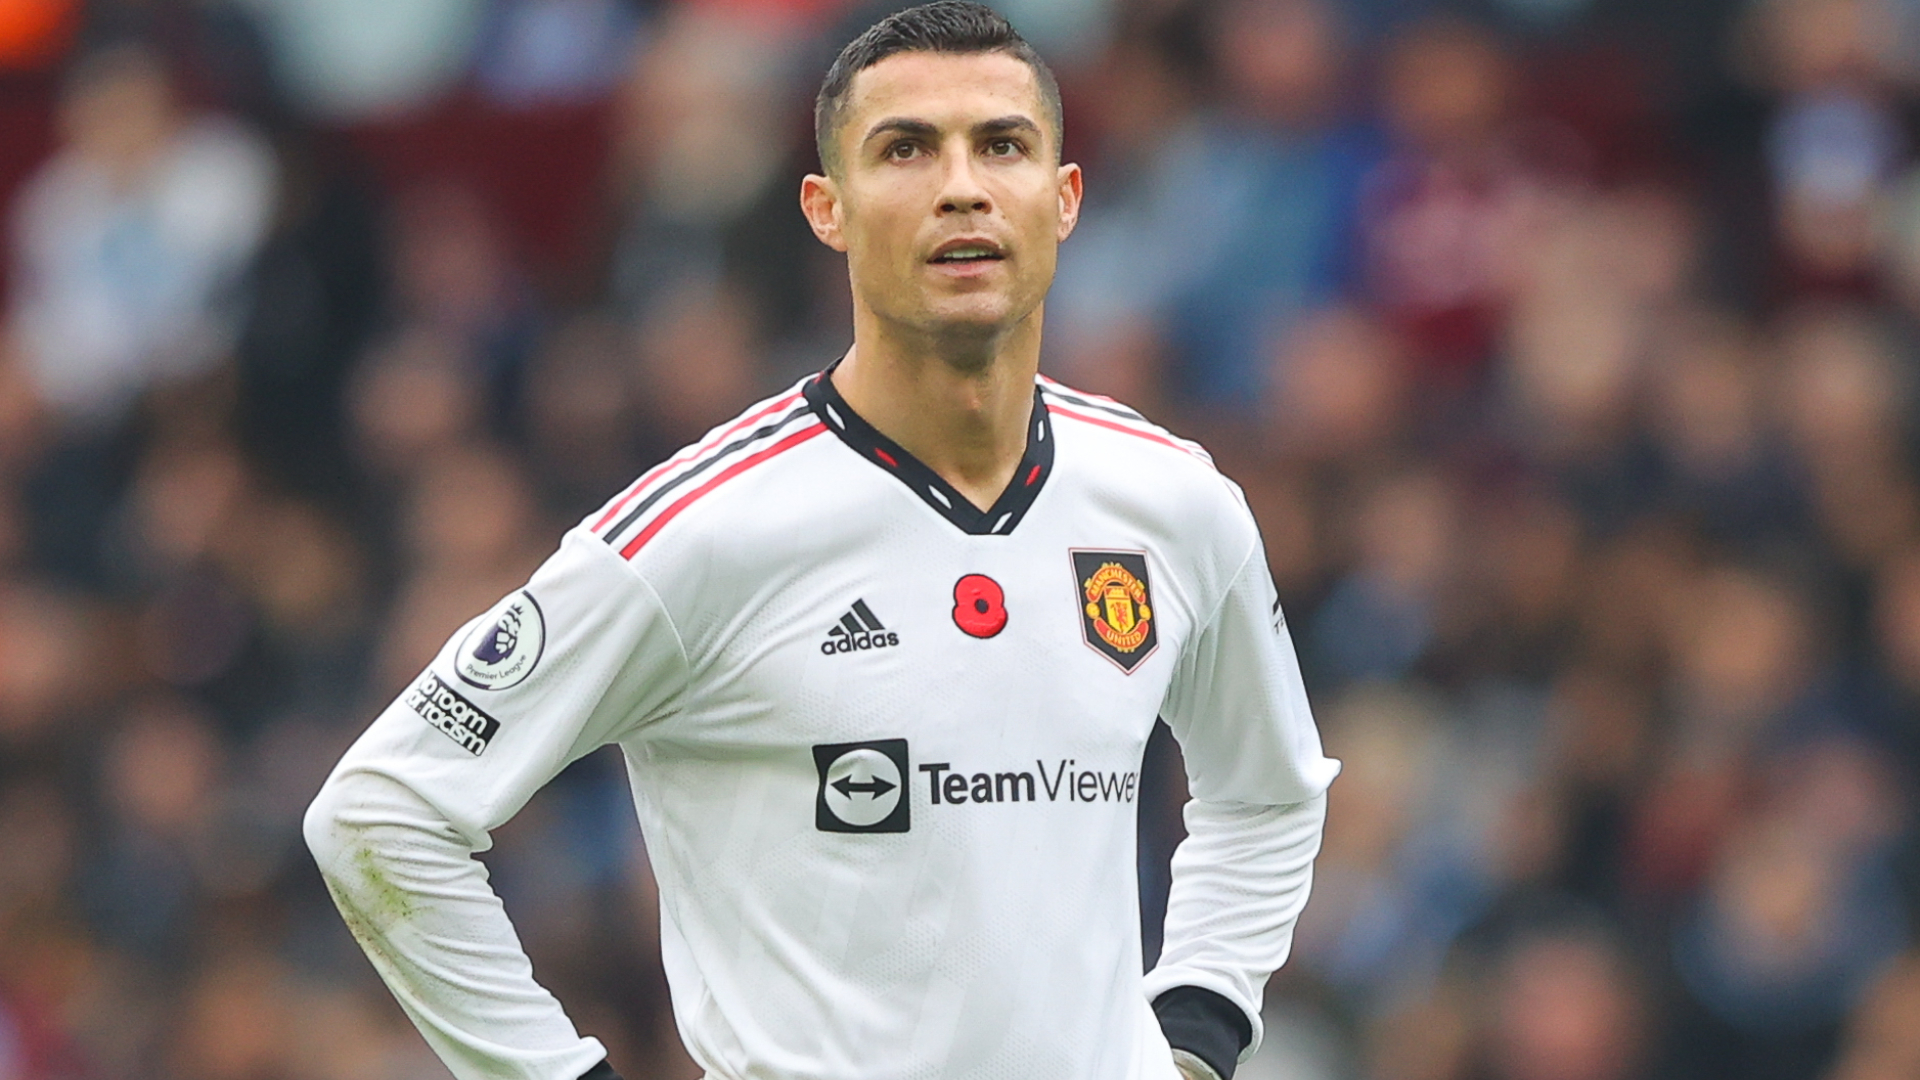 Ronaldo: Former Manchester United star will captain Portugal against Ghana